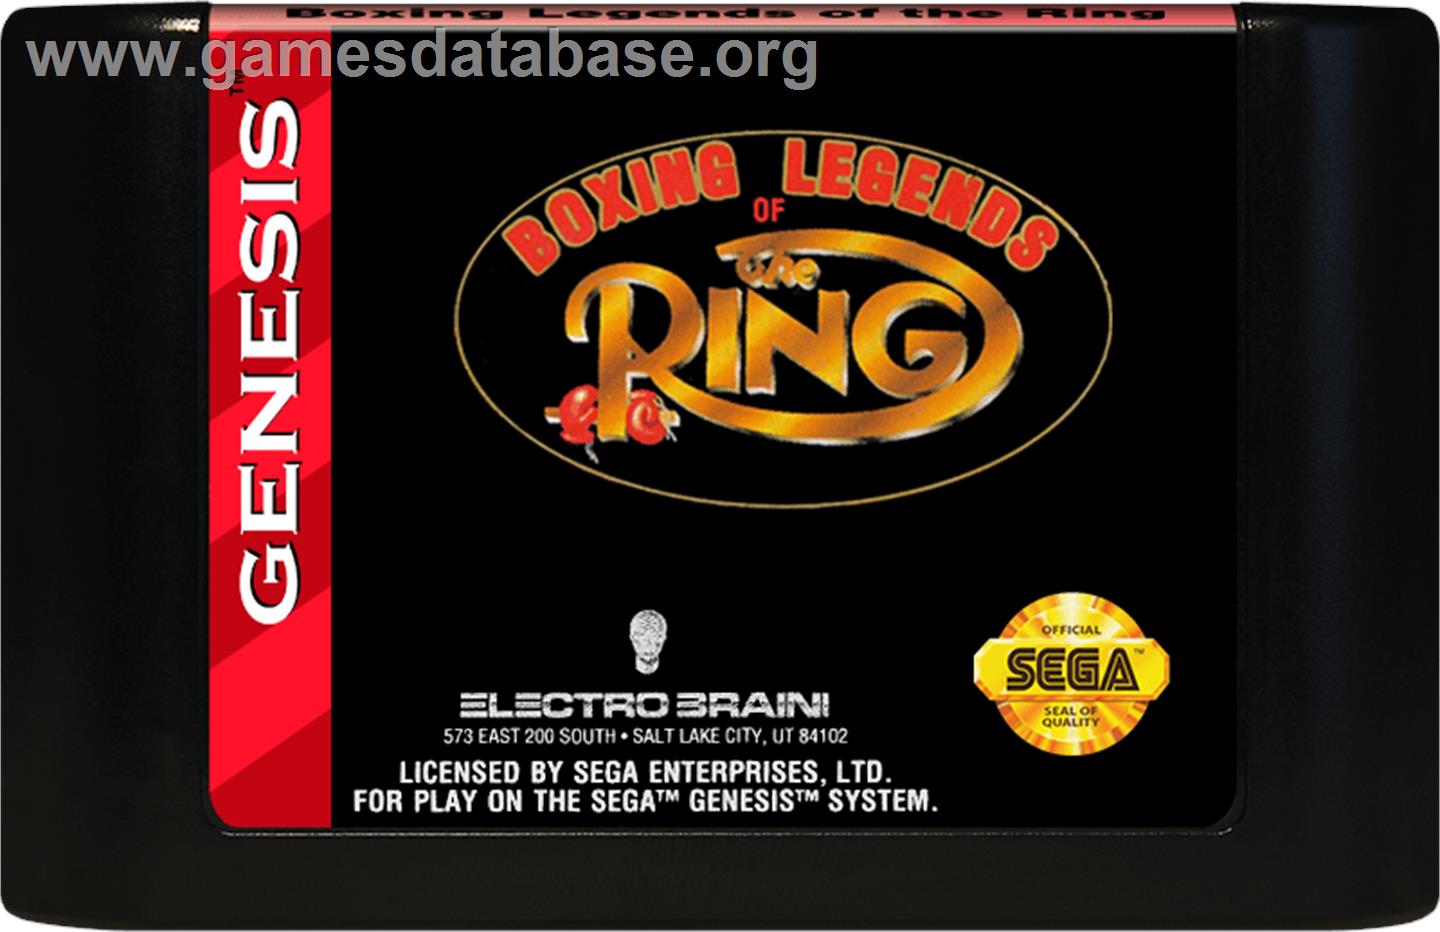 Boxing Legends of the Ring - Sega Genesis - Artwork - Cartridge